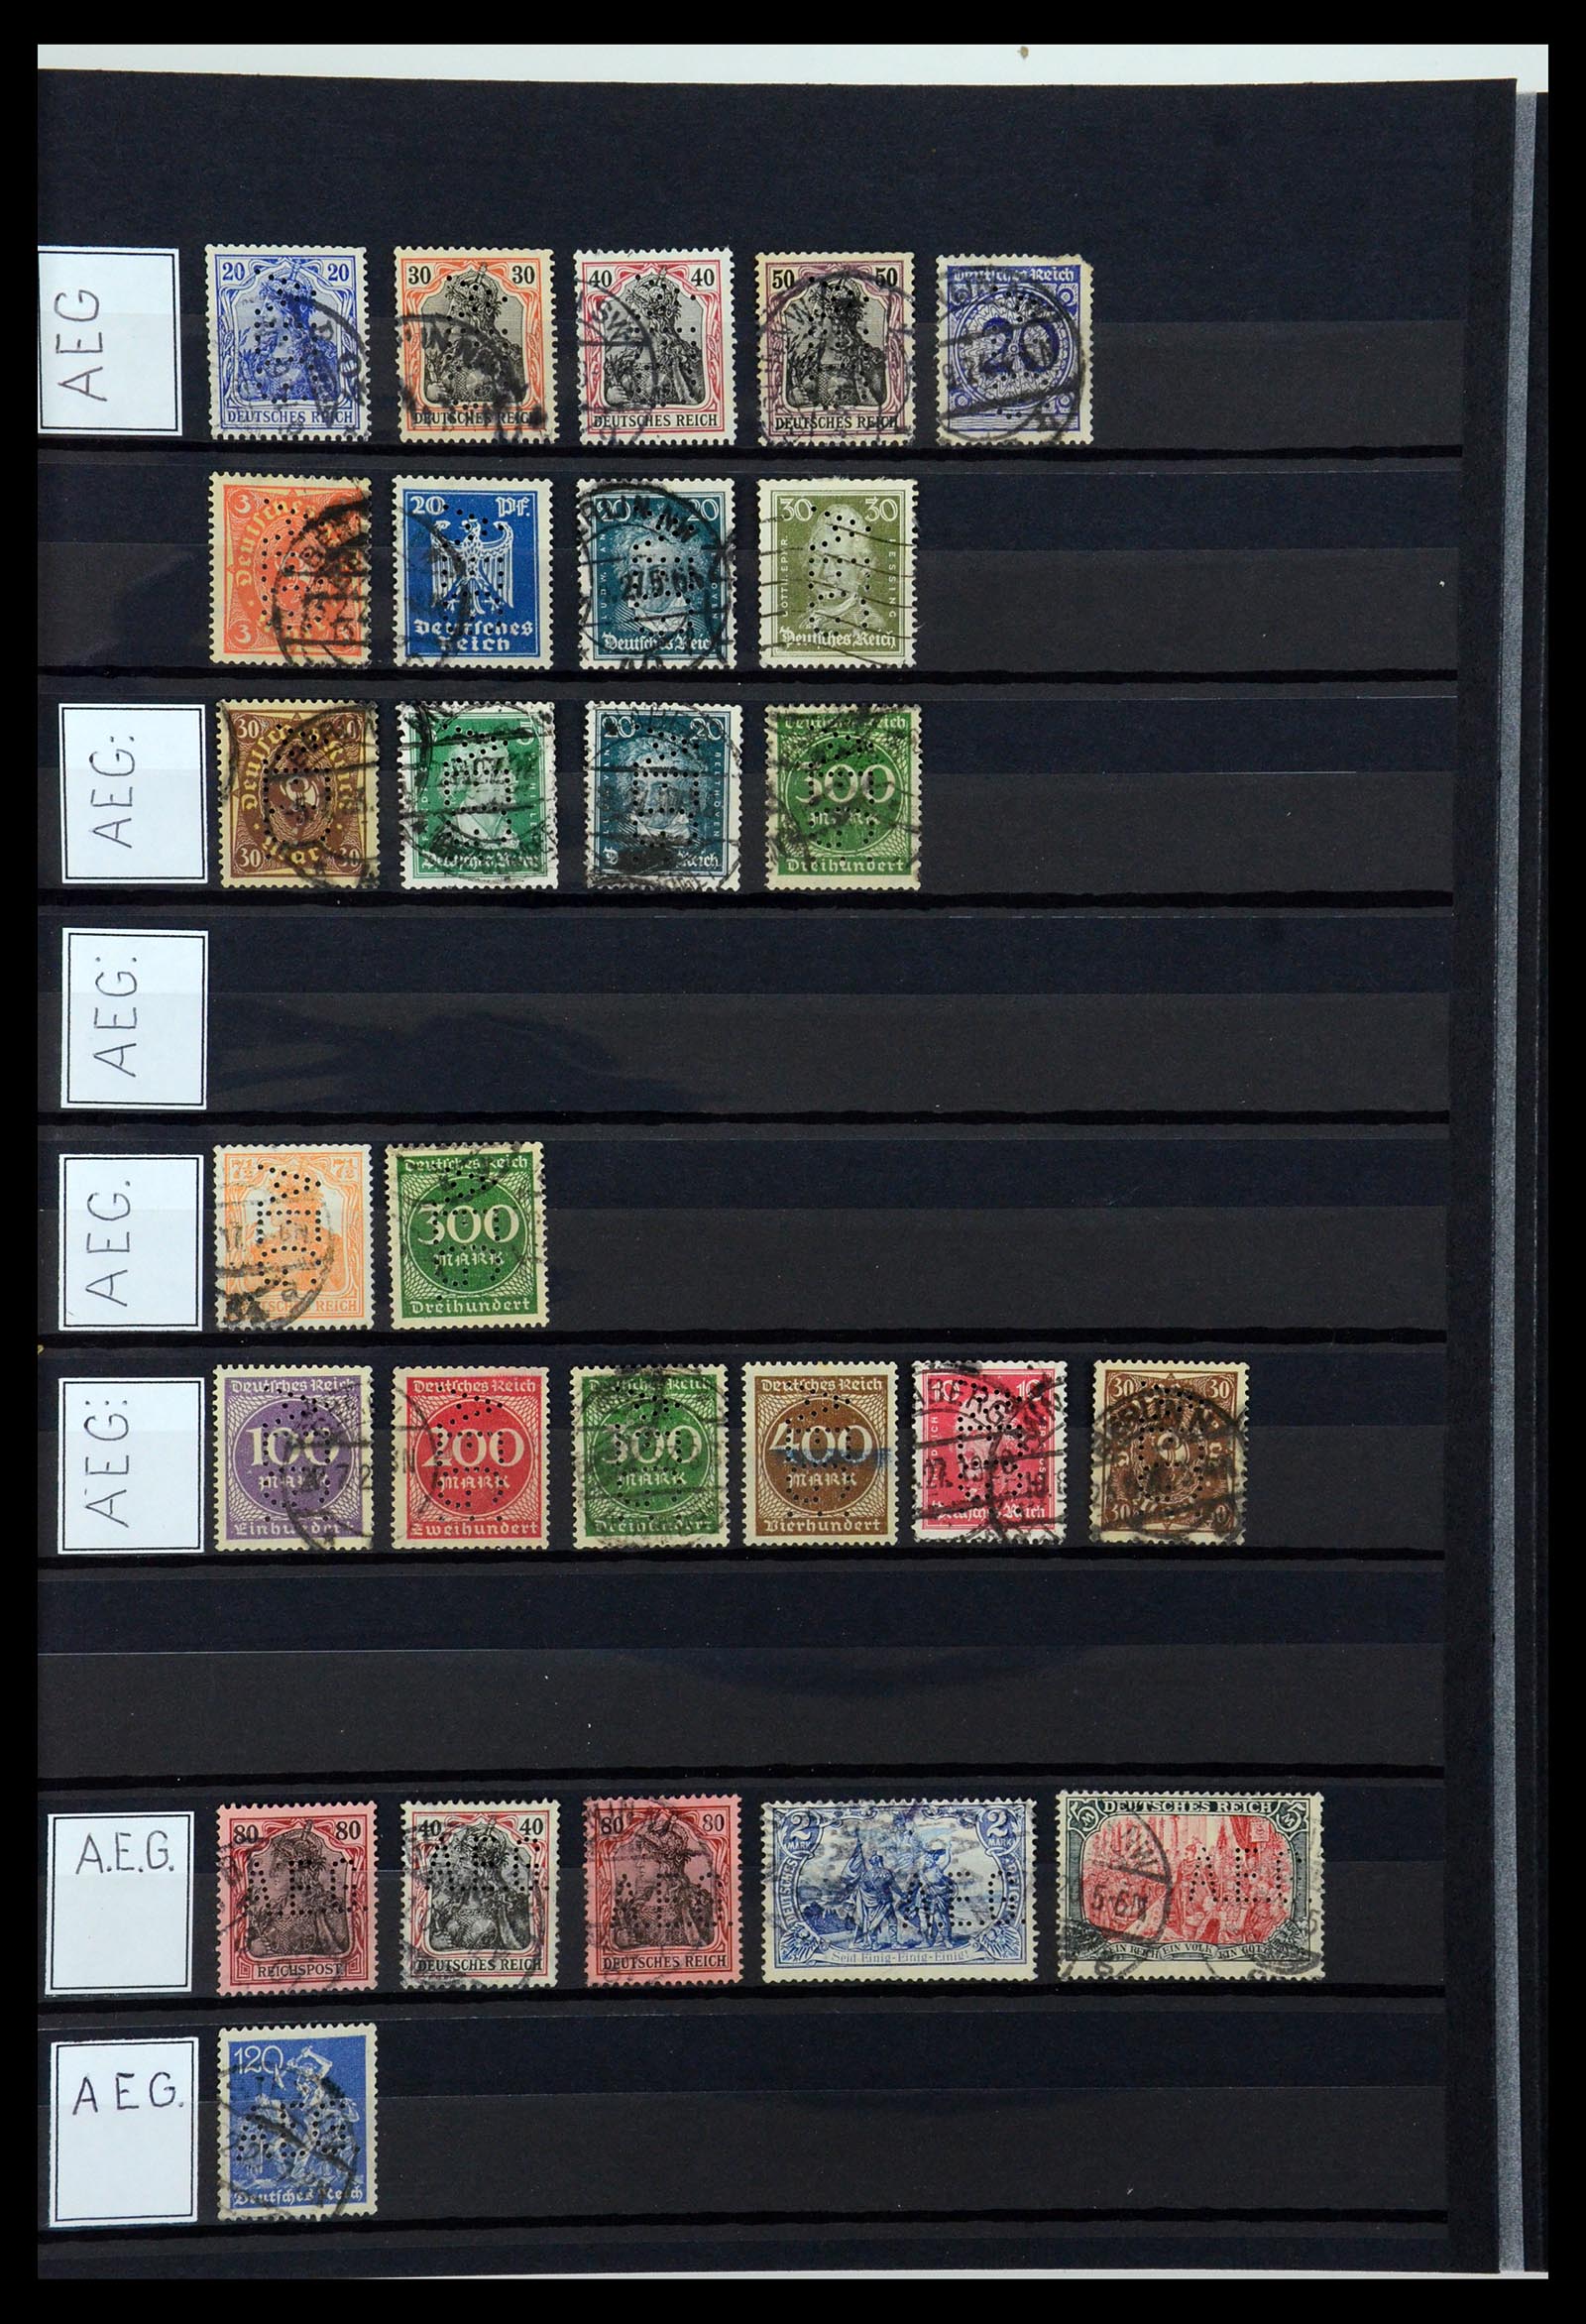 36405 009 - Stamp collection 36405 German Reich perfins 1880-1945.